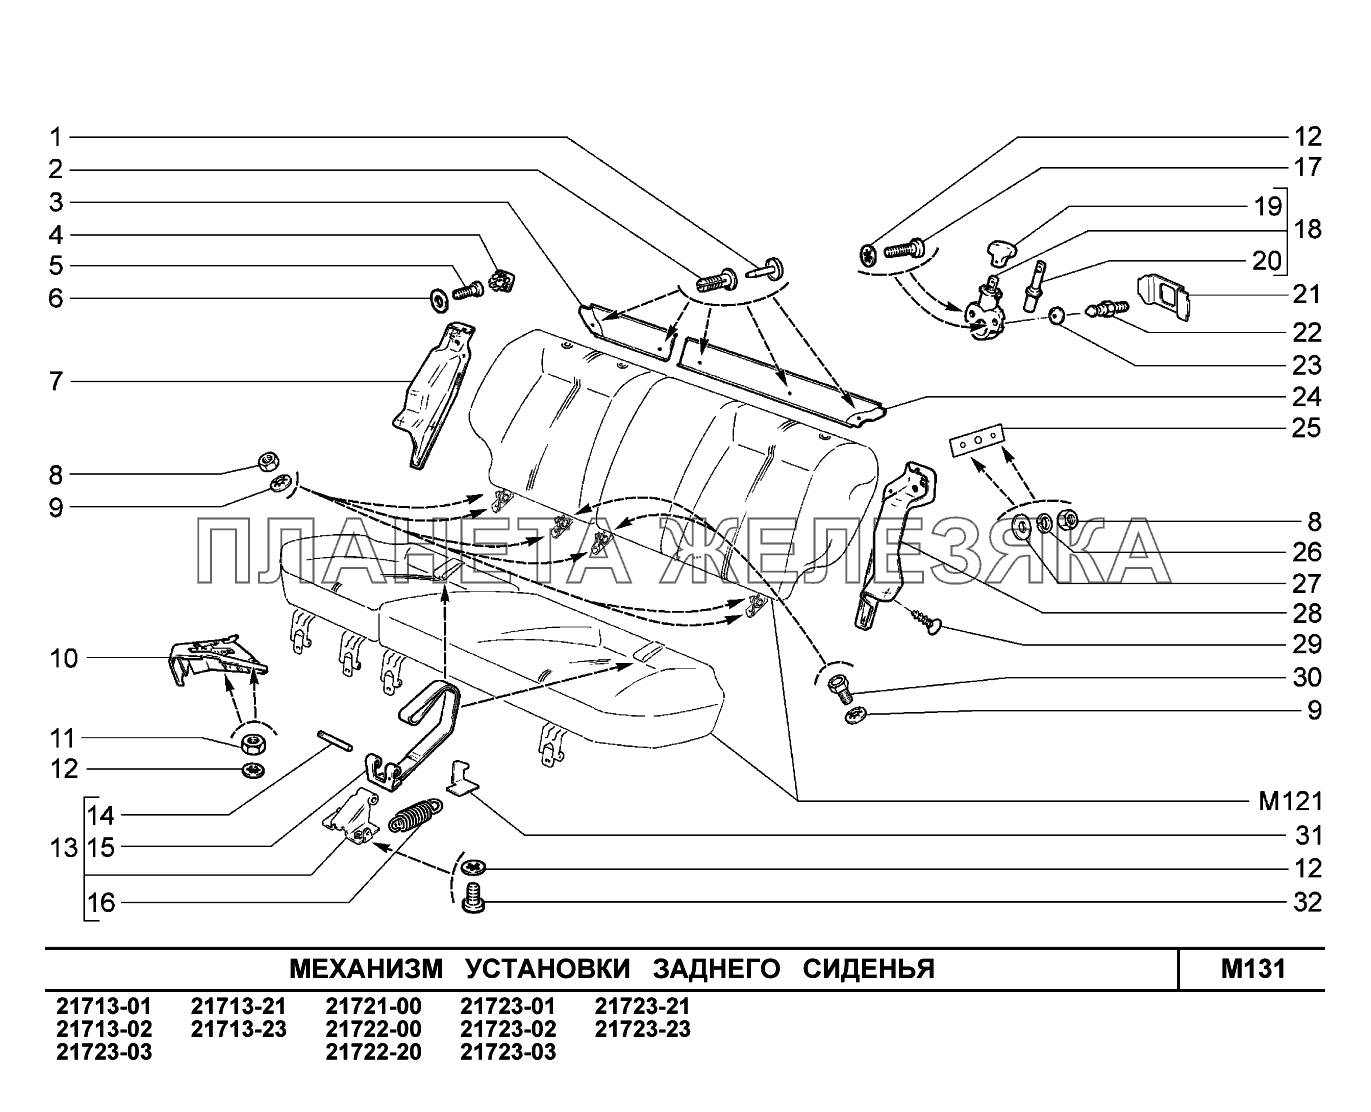 M131. Механизм установки заднего сиденья ВАЗ-2170 